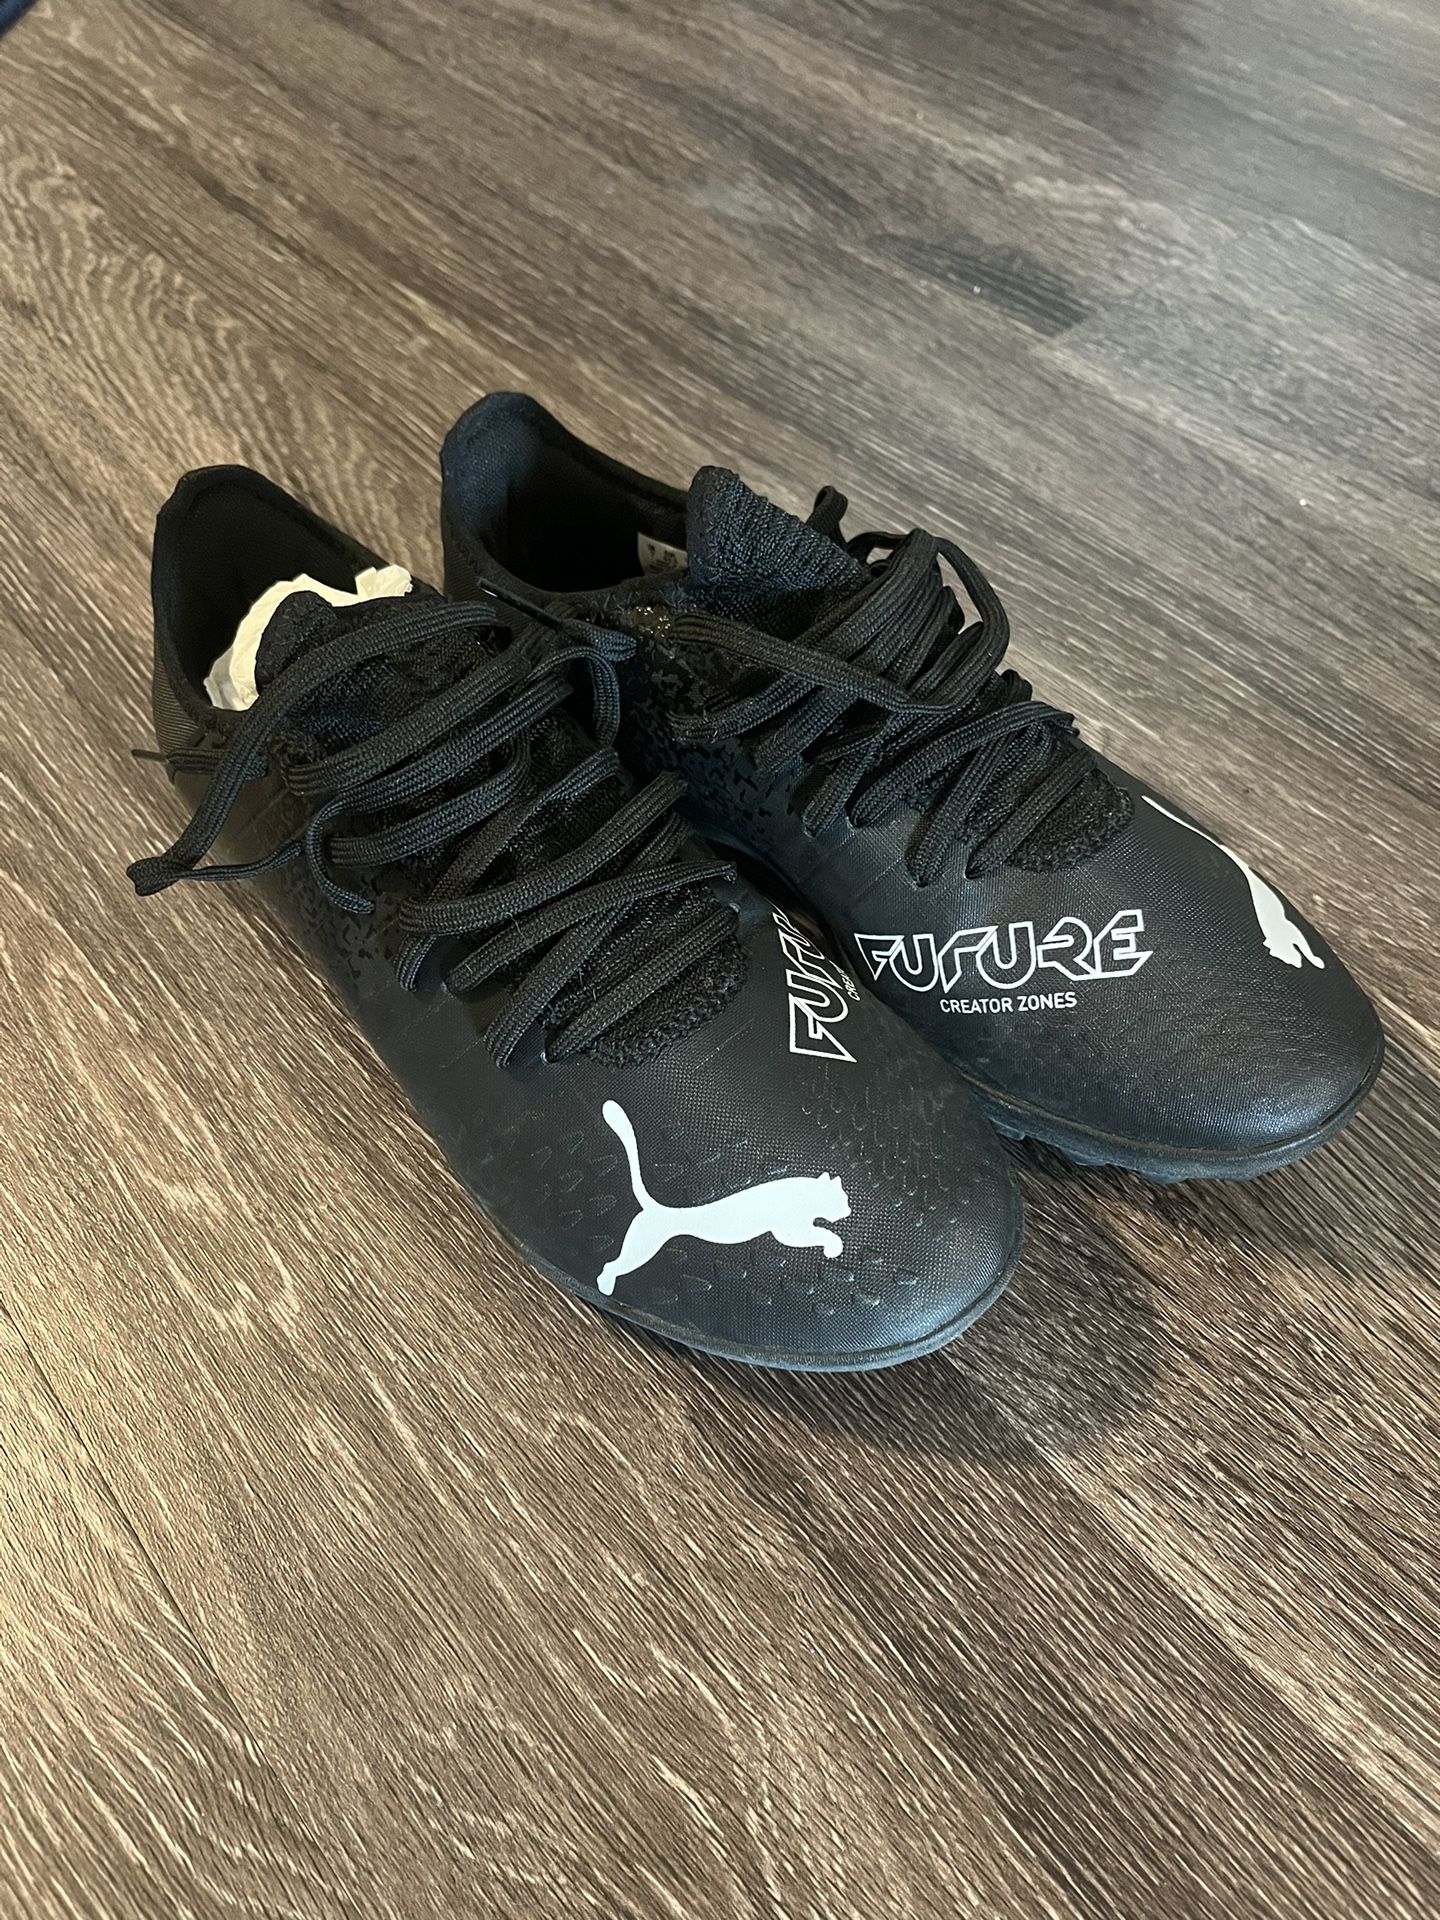 Black Puma Indoor Soccer Shoes - Men Size 8